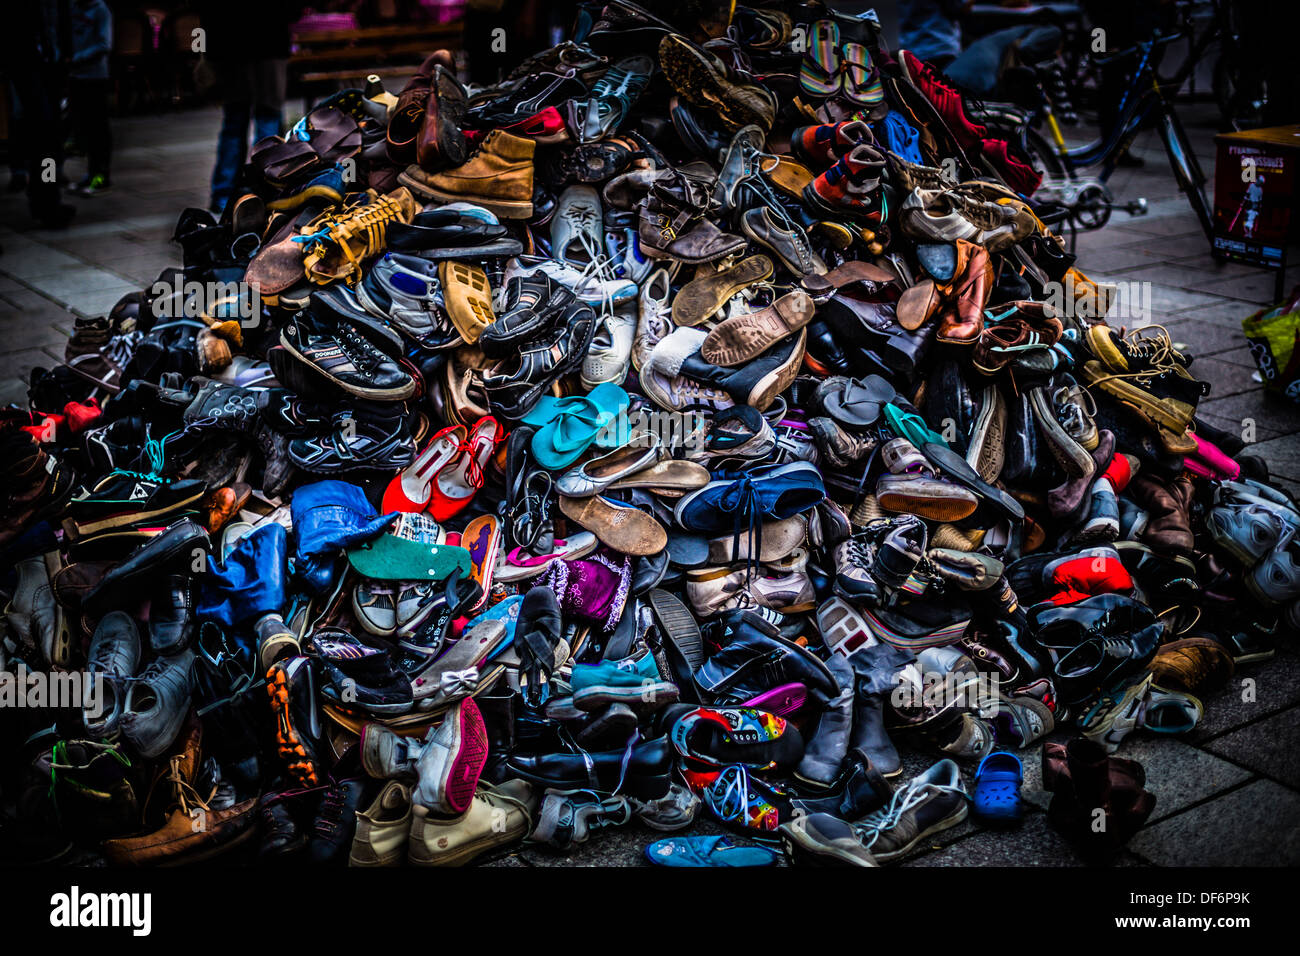 Ein großer bunter Haufen von Schuhen. Dieses wurde verwendet, zu zeigen, wie viel Abfall Menschen produzieren. Es sieht auch ziemlich cool zu! Stockfoto